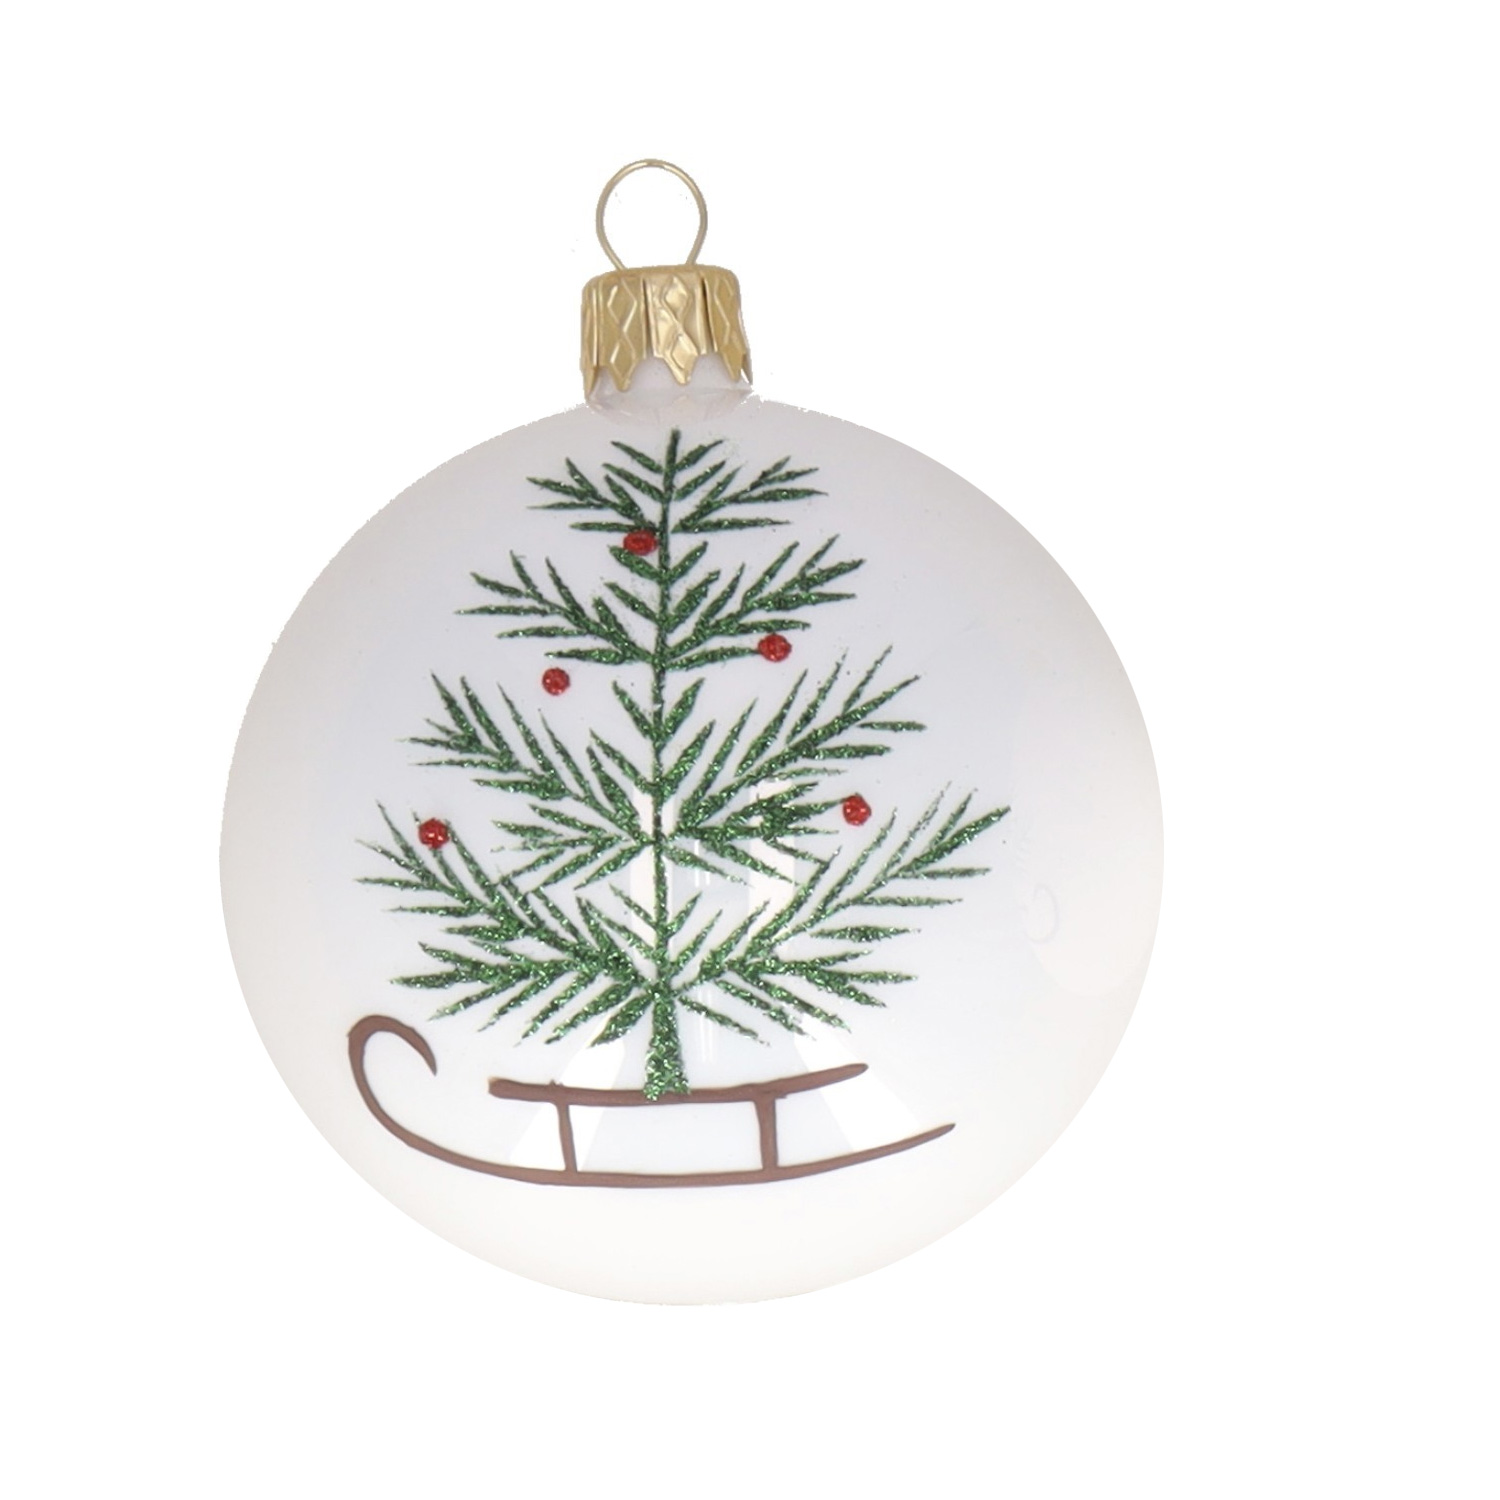 Weihnachtskugel "Schlitten mit Baum" grün-braun-weiß, D. ca. 8 cm, handbemalt, weiß glänzend 